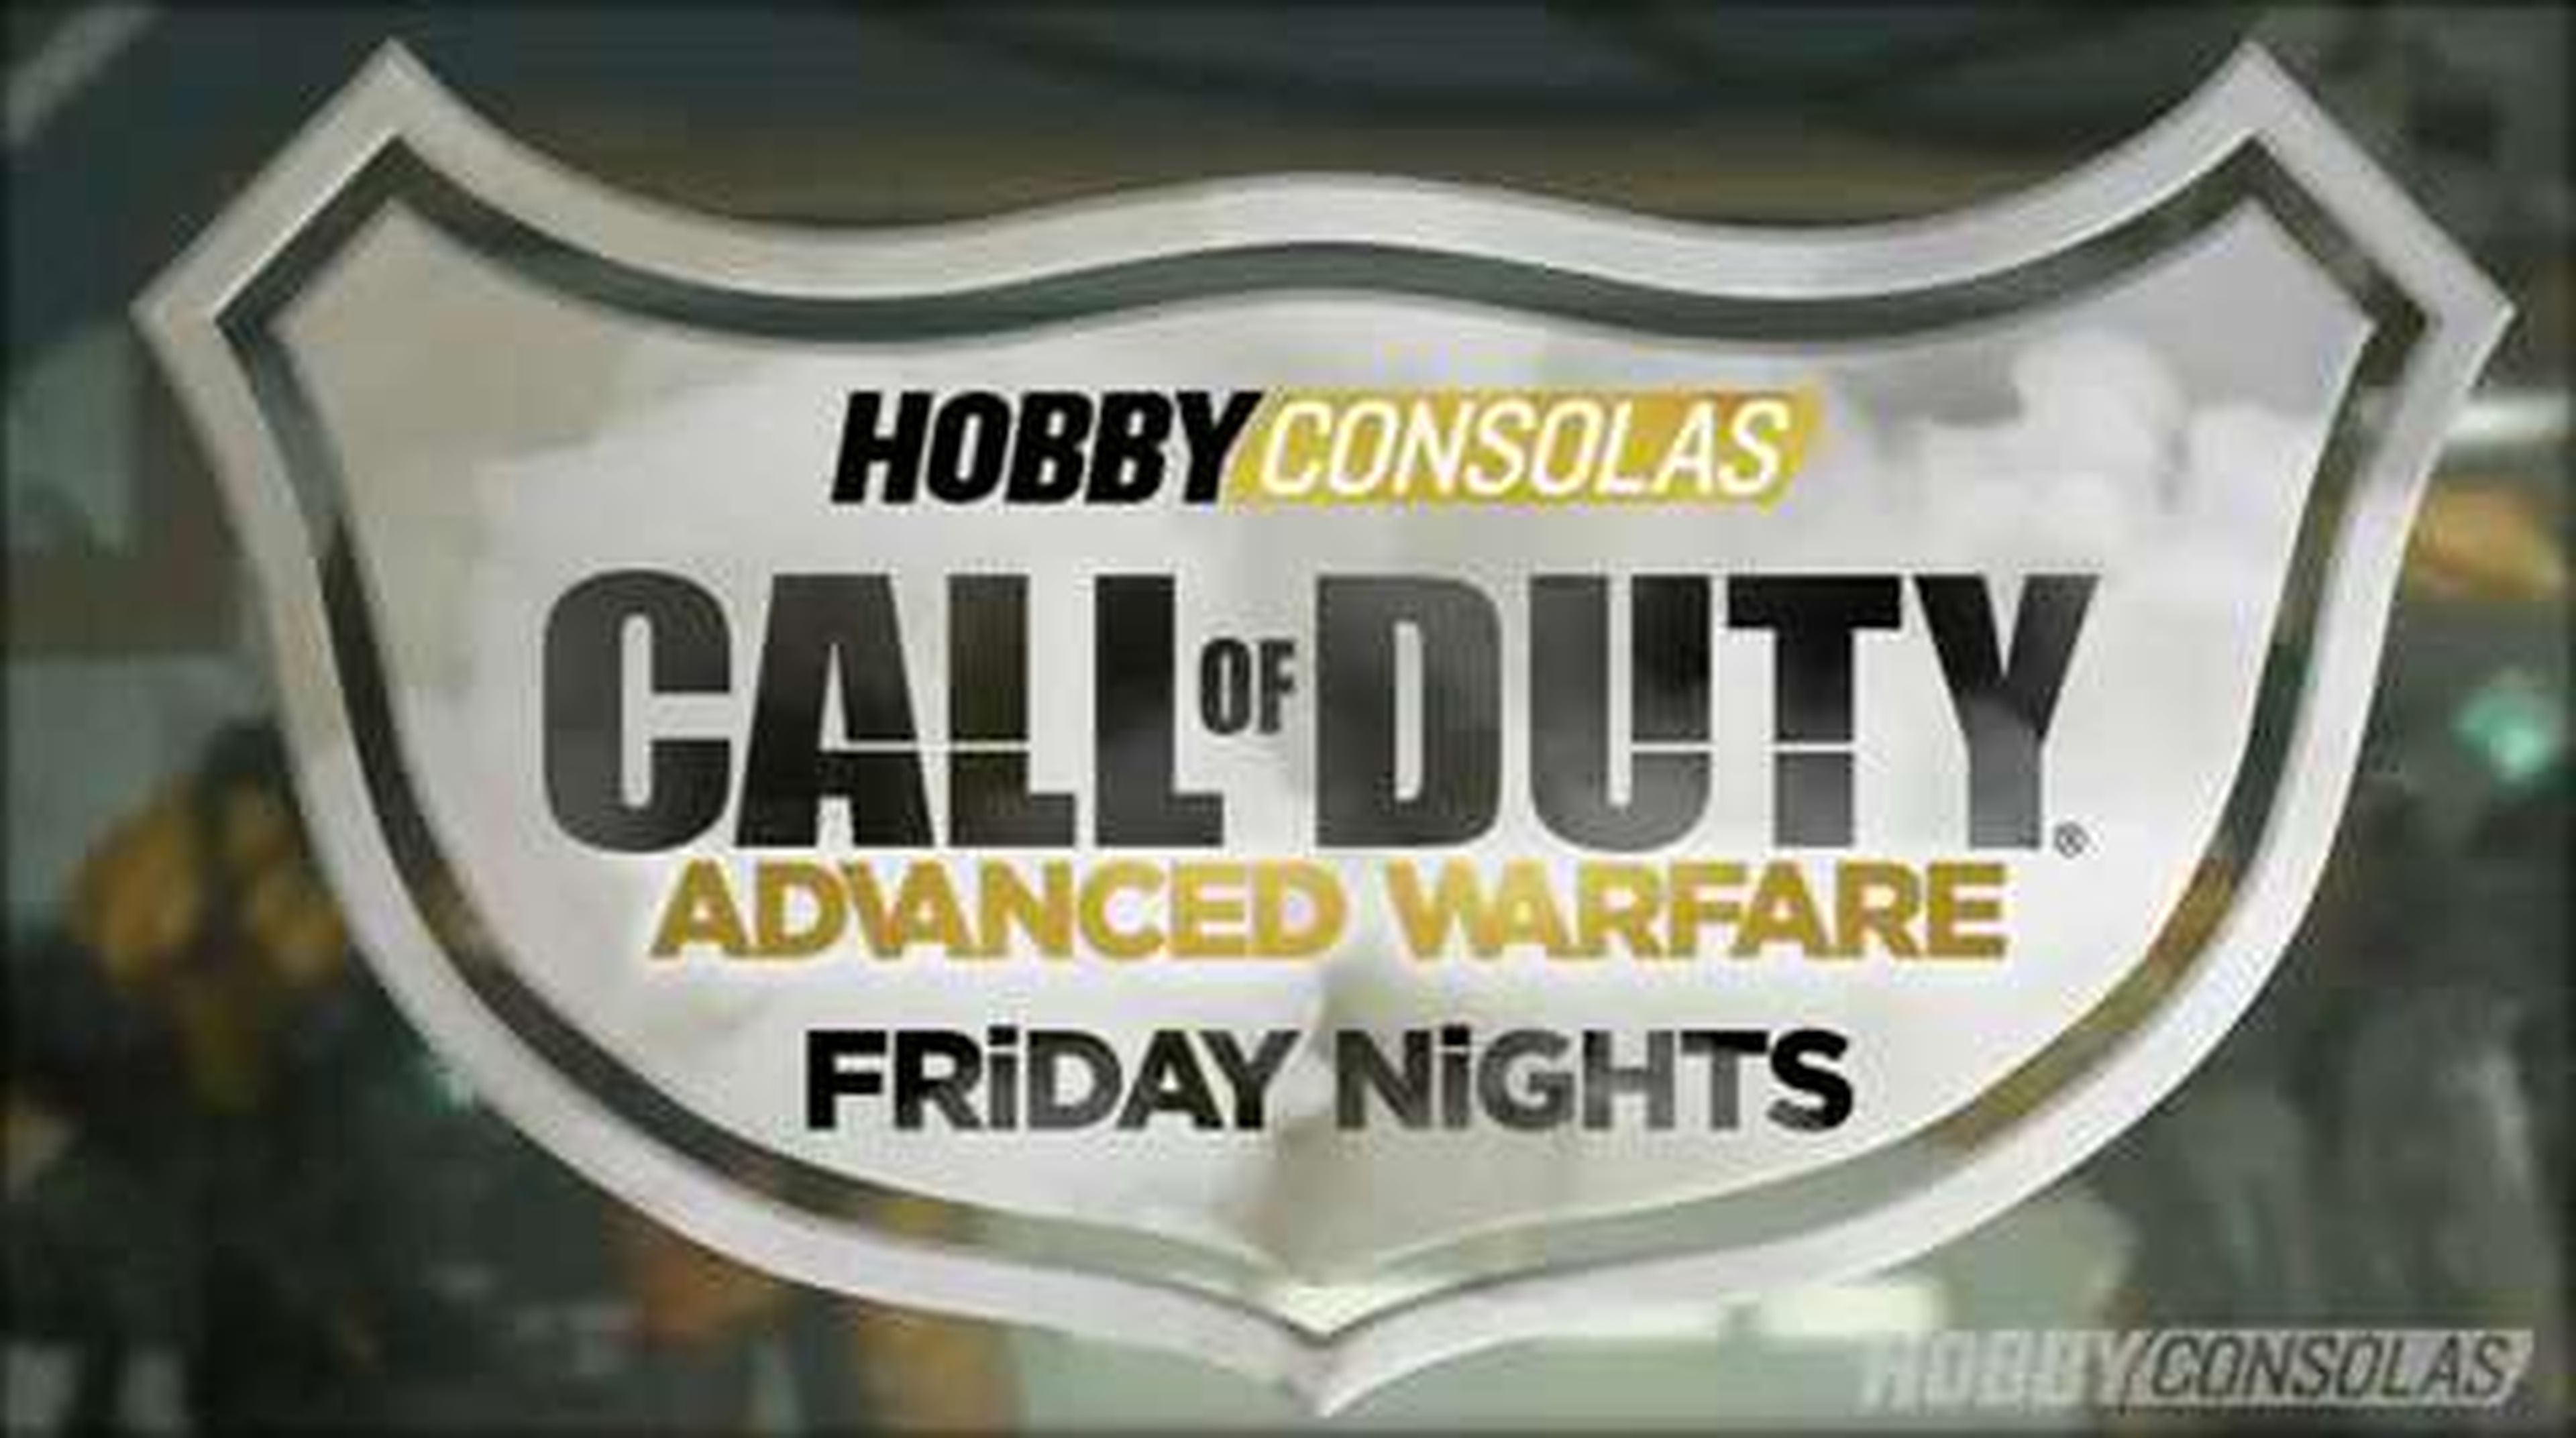 Call of Duty FridayNights (3) 15-8-2014 (HD) en HobbyConsolas.com